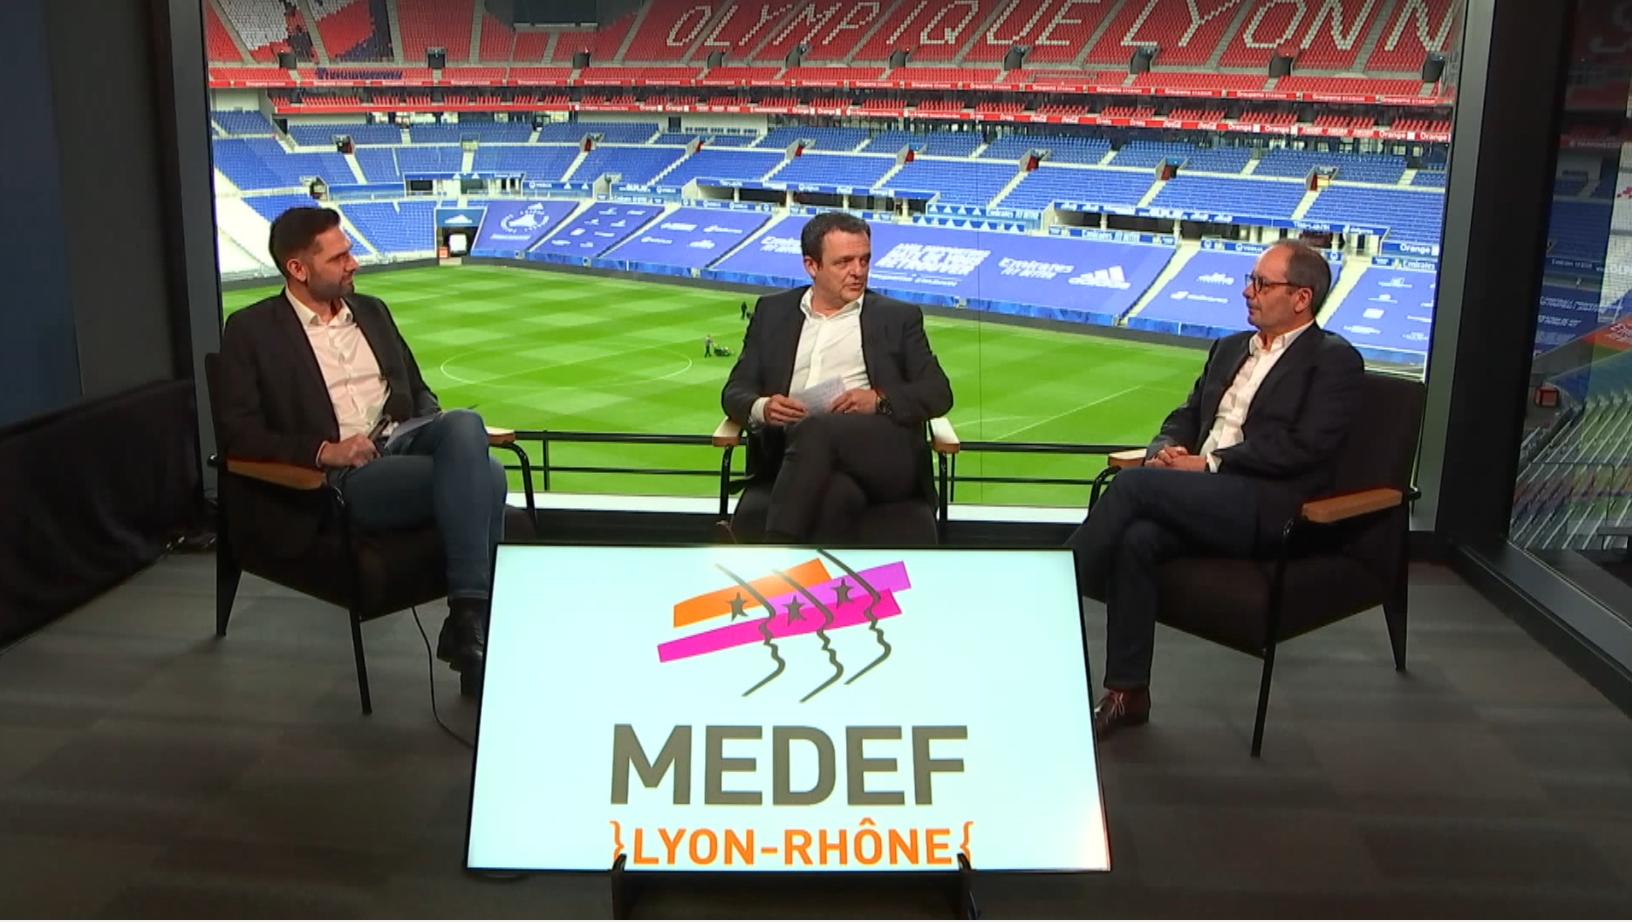 Passation de pouvoir et voeux entre les Présidents du MEDEF Lyon-Rhône : Laurent Fiard, Président de 2014 à 2020 et Vice-Président depuis 2021, et Gilles Courteix, de Courteix Bâtiment, ancien Président de la FBTP Rhône et FFB AURA, Président du MEDEF Lyon-Rhône depuis 2021